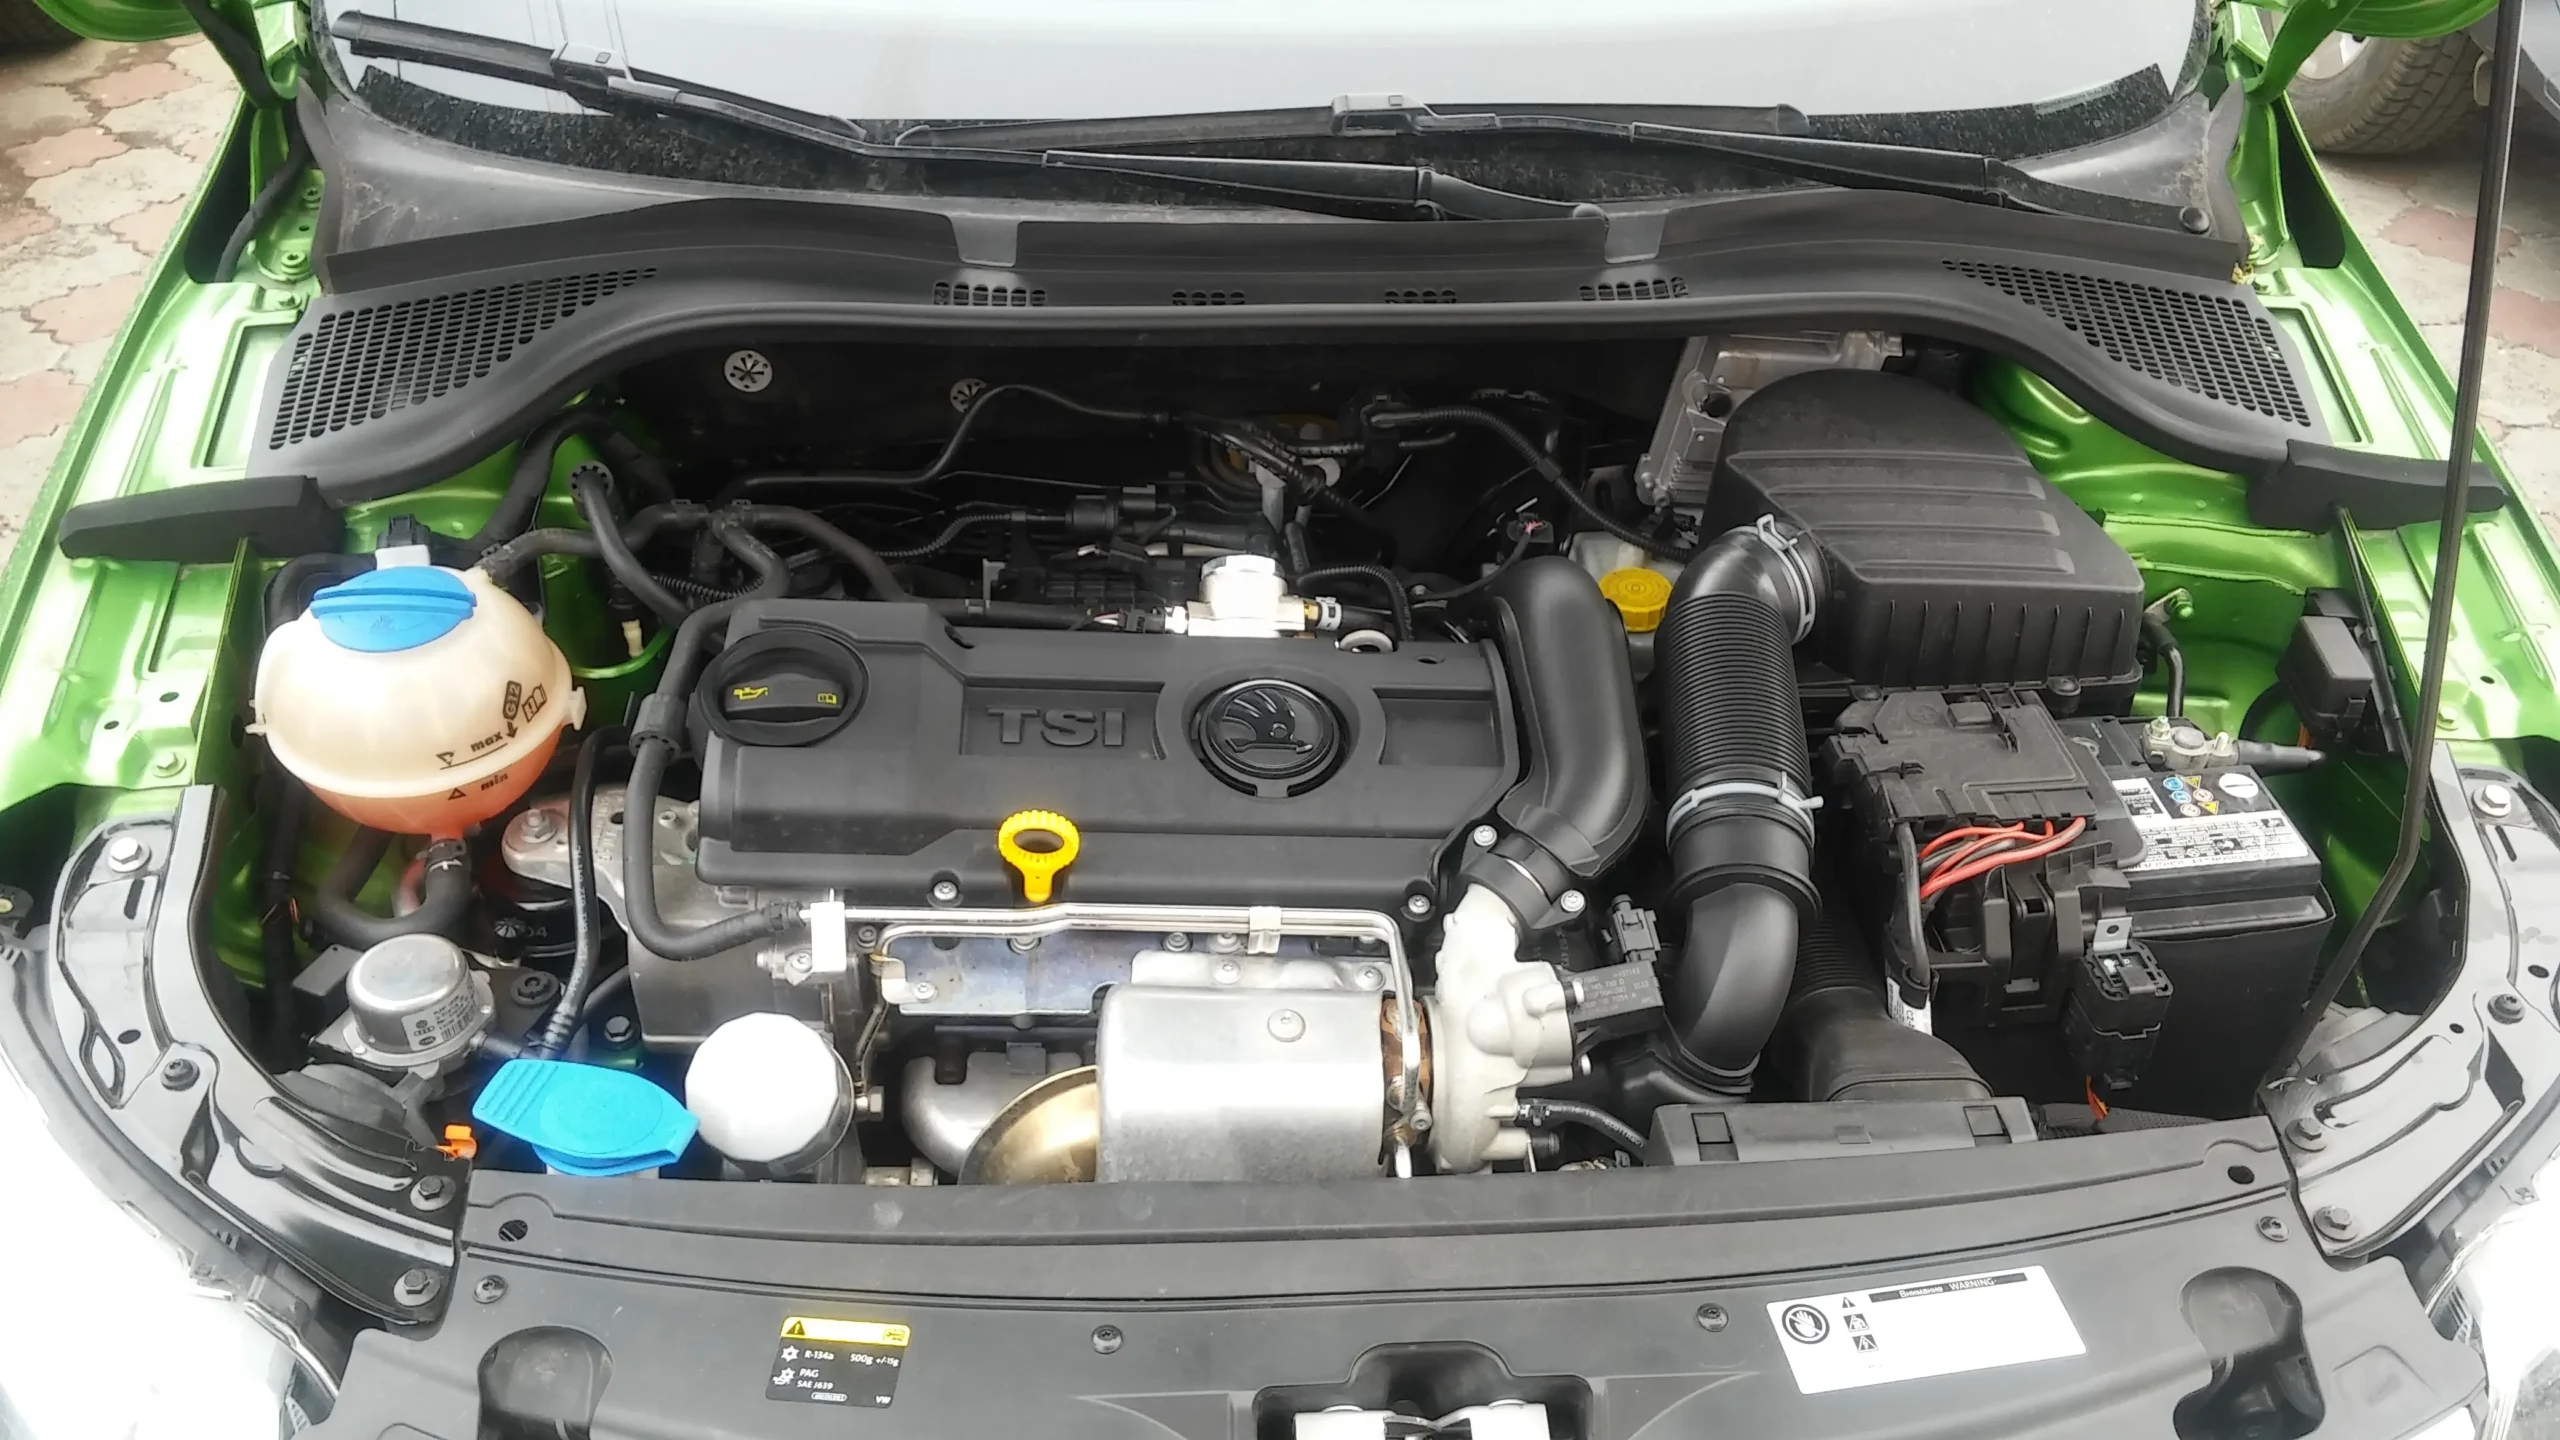 Реле контроля давления масла Audi 80 Б3 - местоположение и функции, подробная информация для владельцев